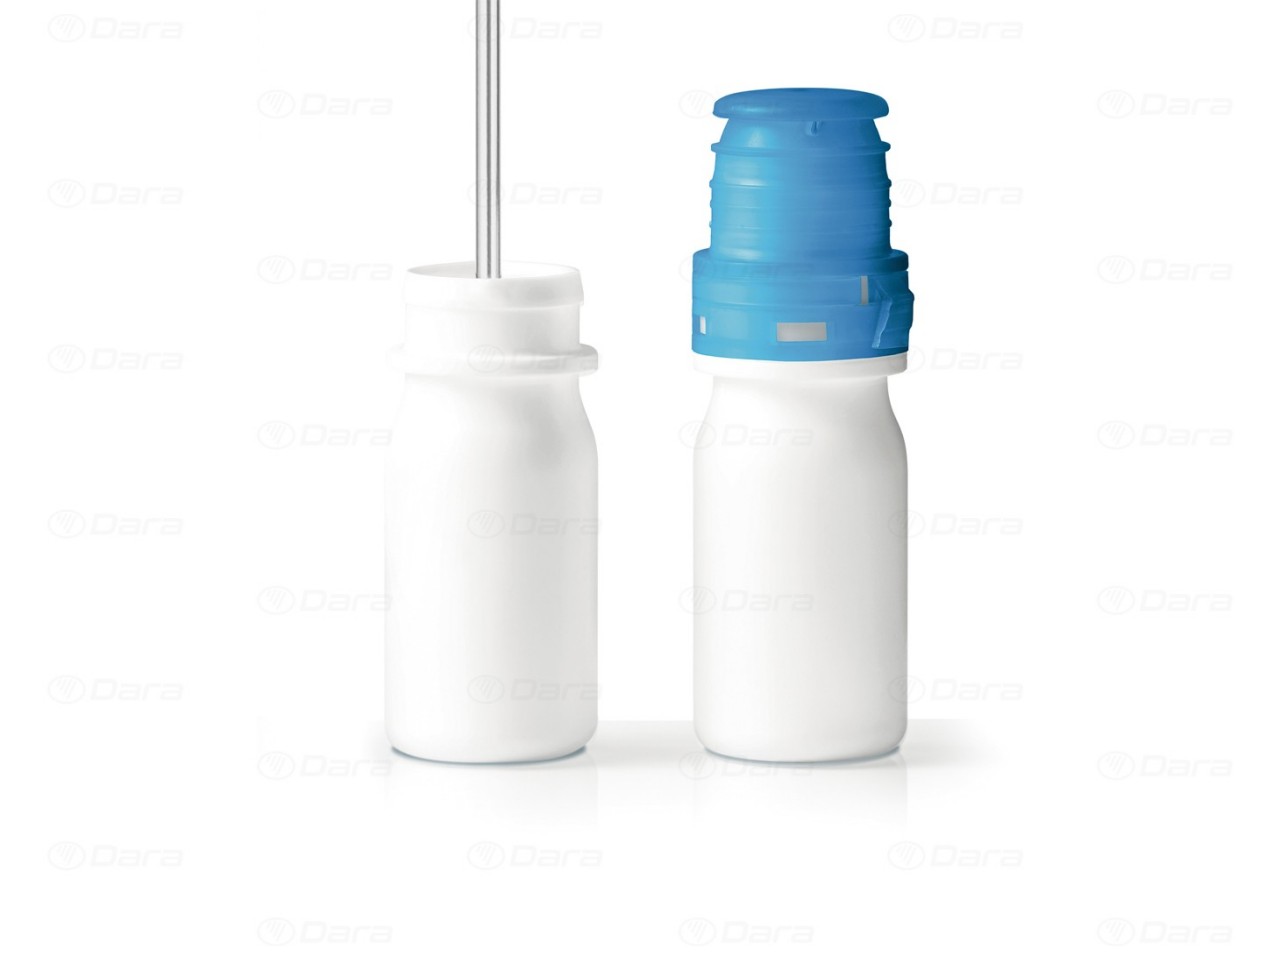  Llenadoras - cerradoras rotativas para oftálmicos y nasales